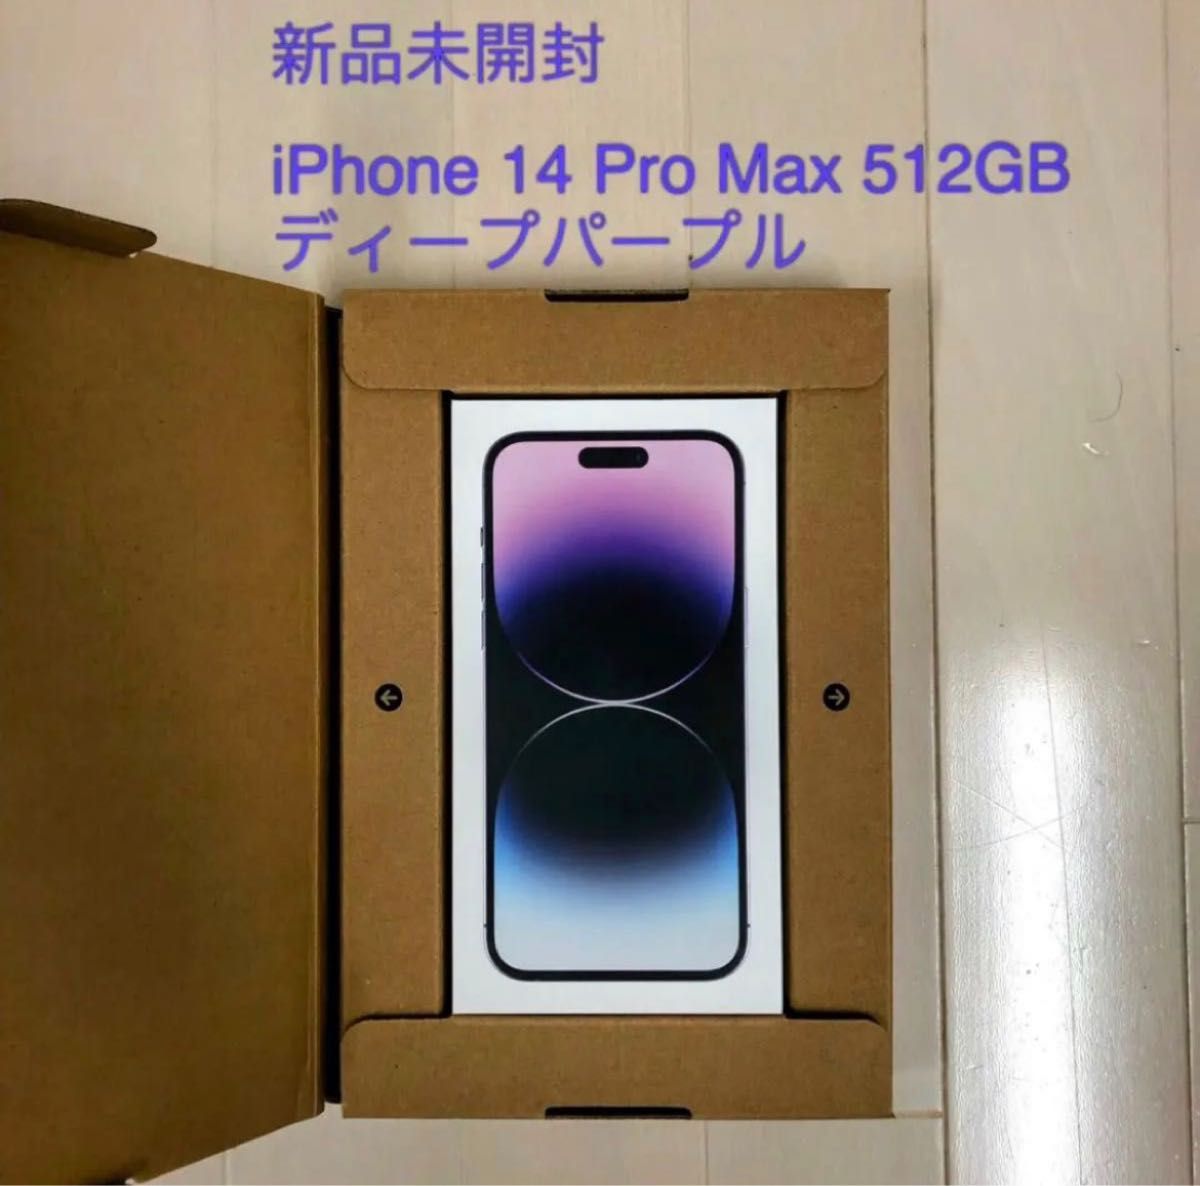 即発送 iPhone 14 Pro Max 512GB ディープパープル SIMフリー｜PayPay 